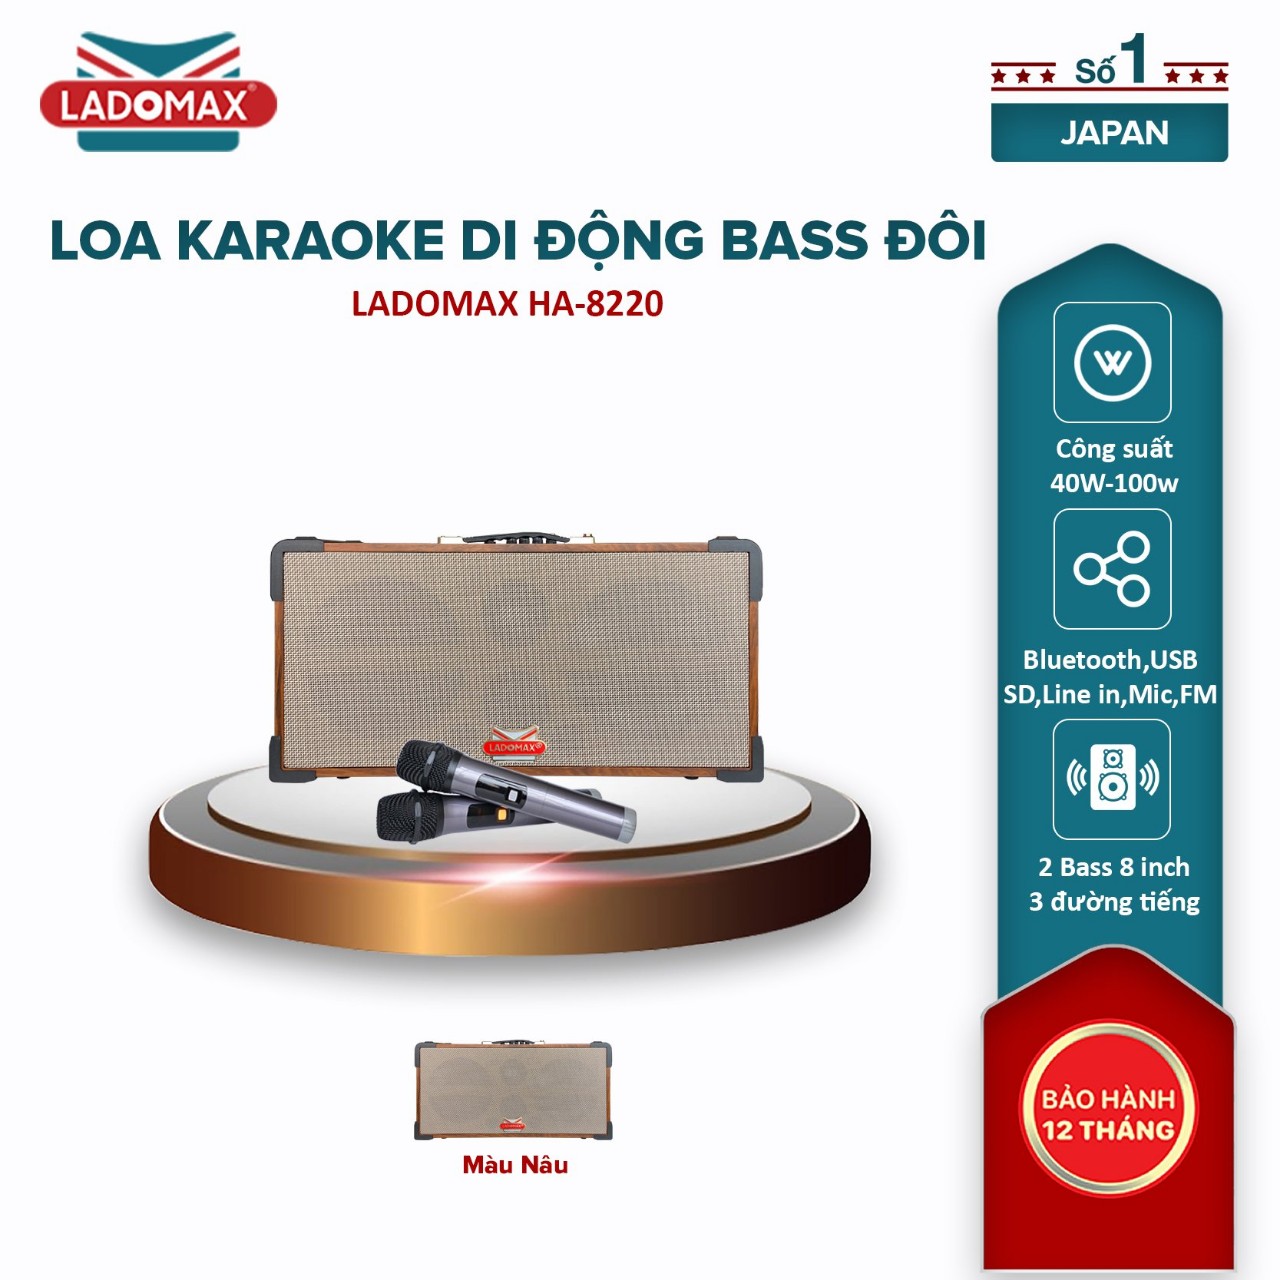 Loa hát Karaoke xách tay Ladomax HA-8220 có chức năng Lọc nhiễu &amp; Chống hú, pin sử dụng 4 - 6 giờ - Hàng chính hãng